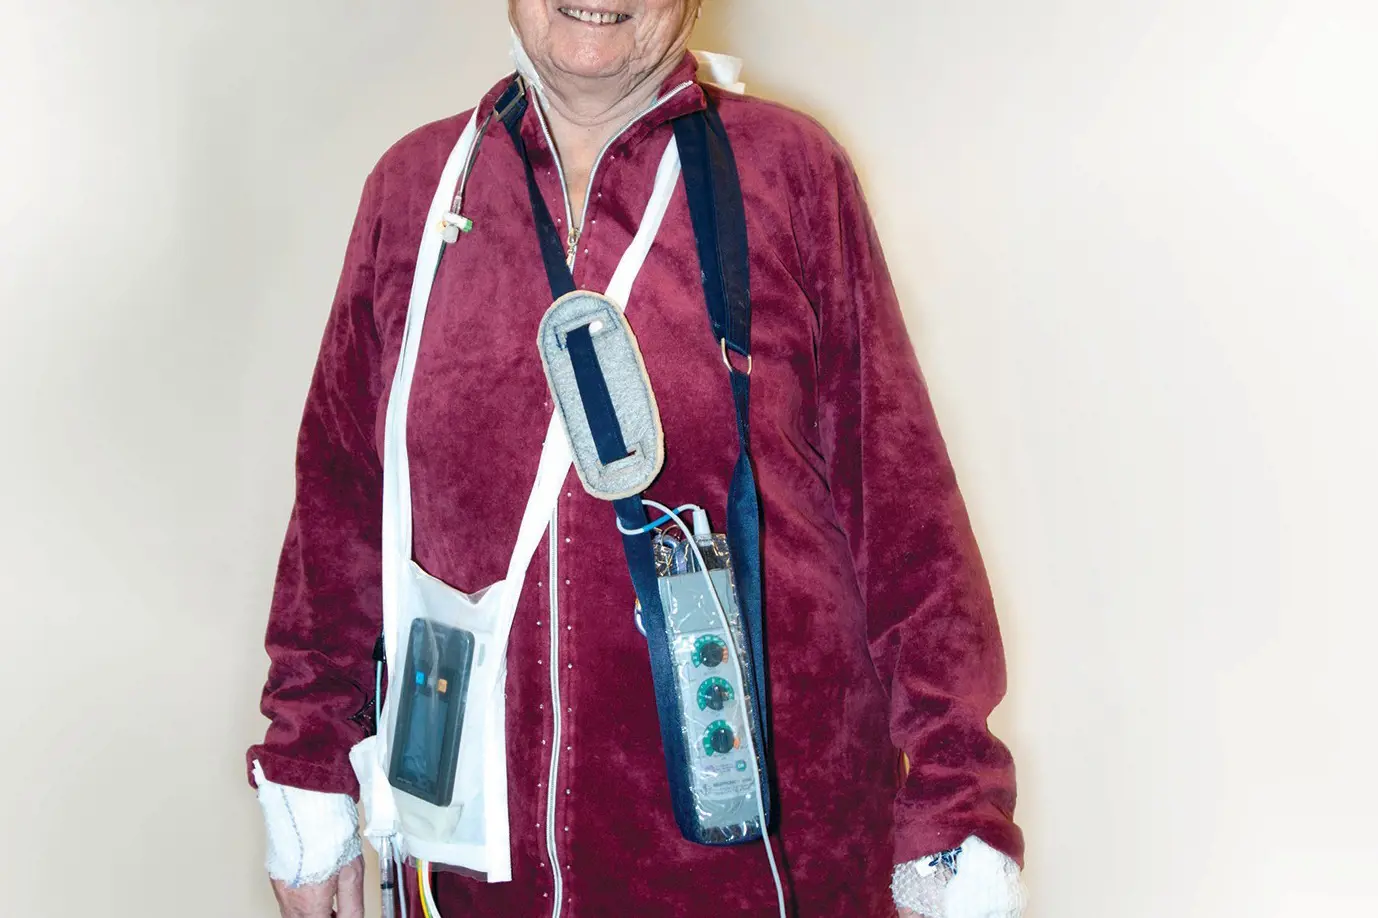 Bilde viser ein pasient som er oppe å går med mellombels pacemaker og telemetriovervaking.foto